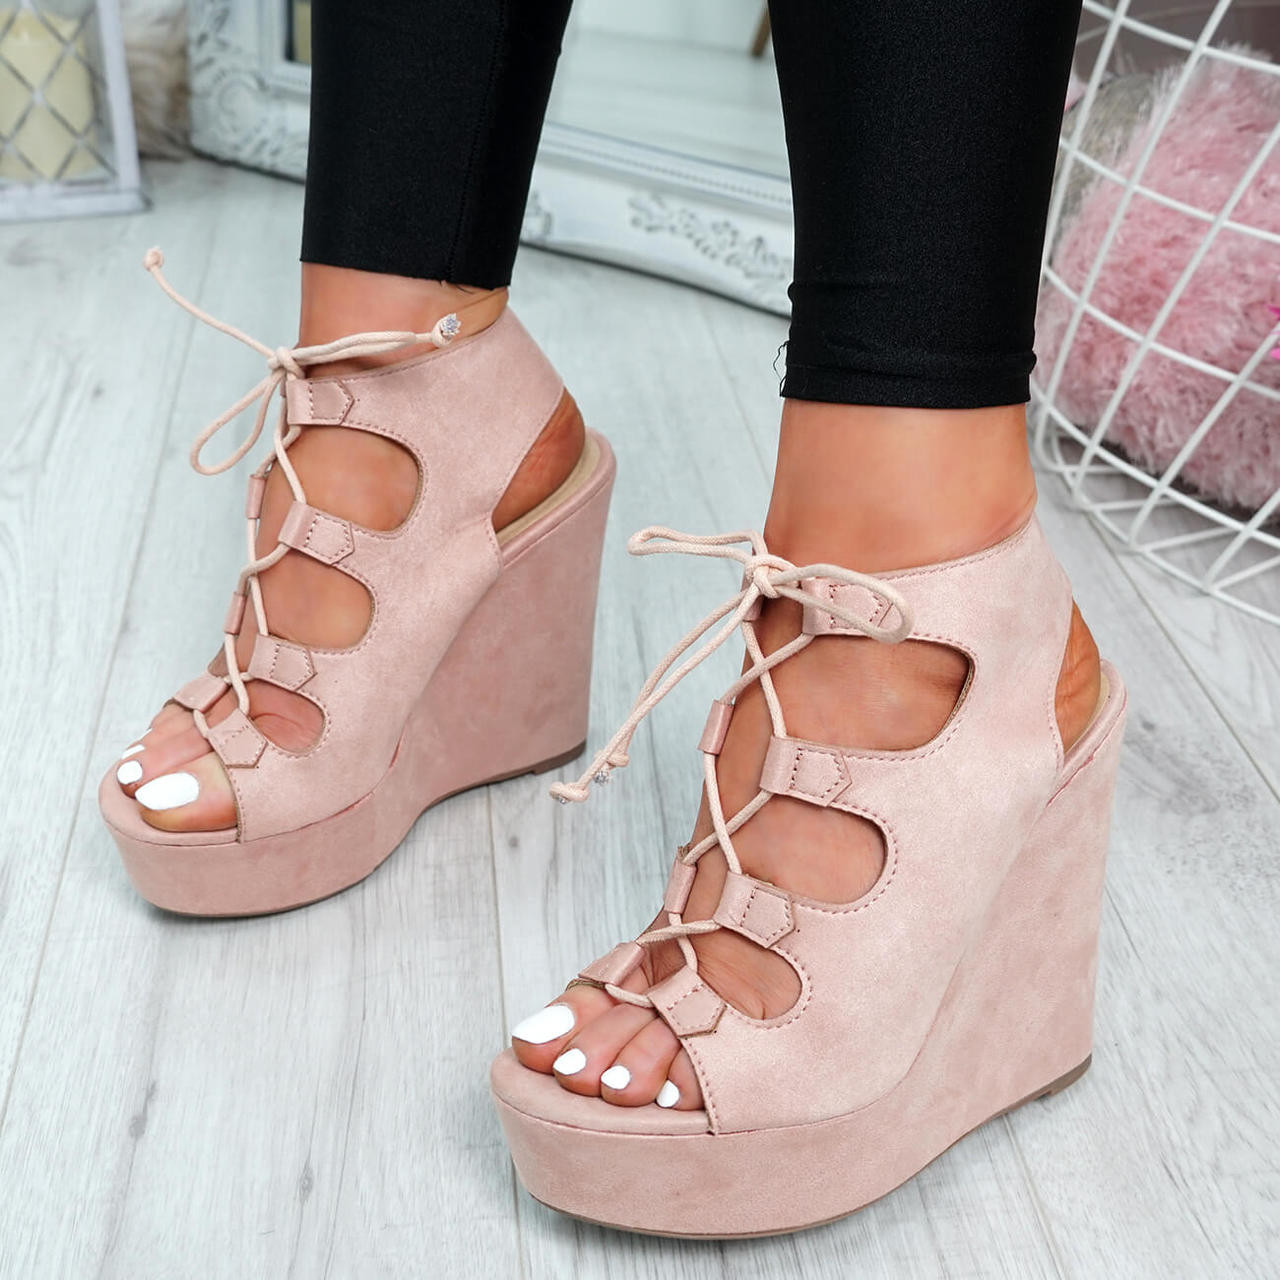 blush pink sandals uk